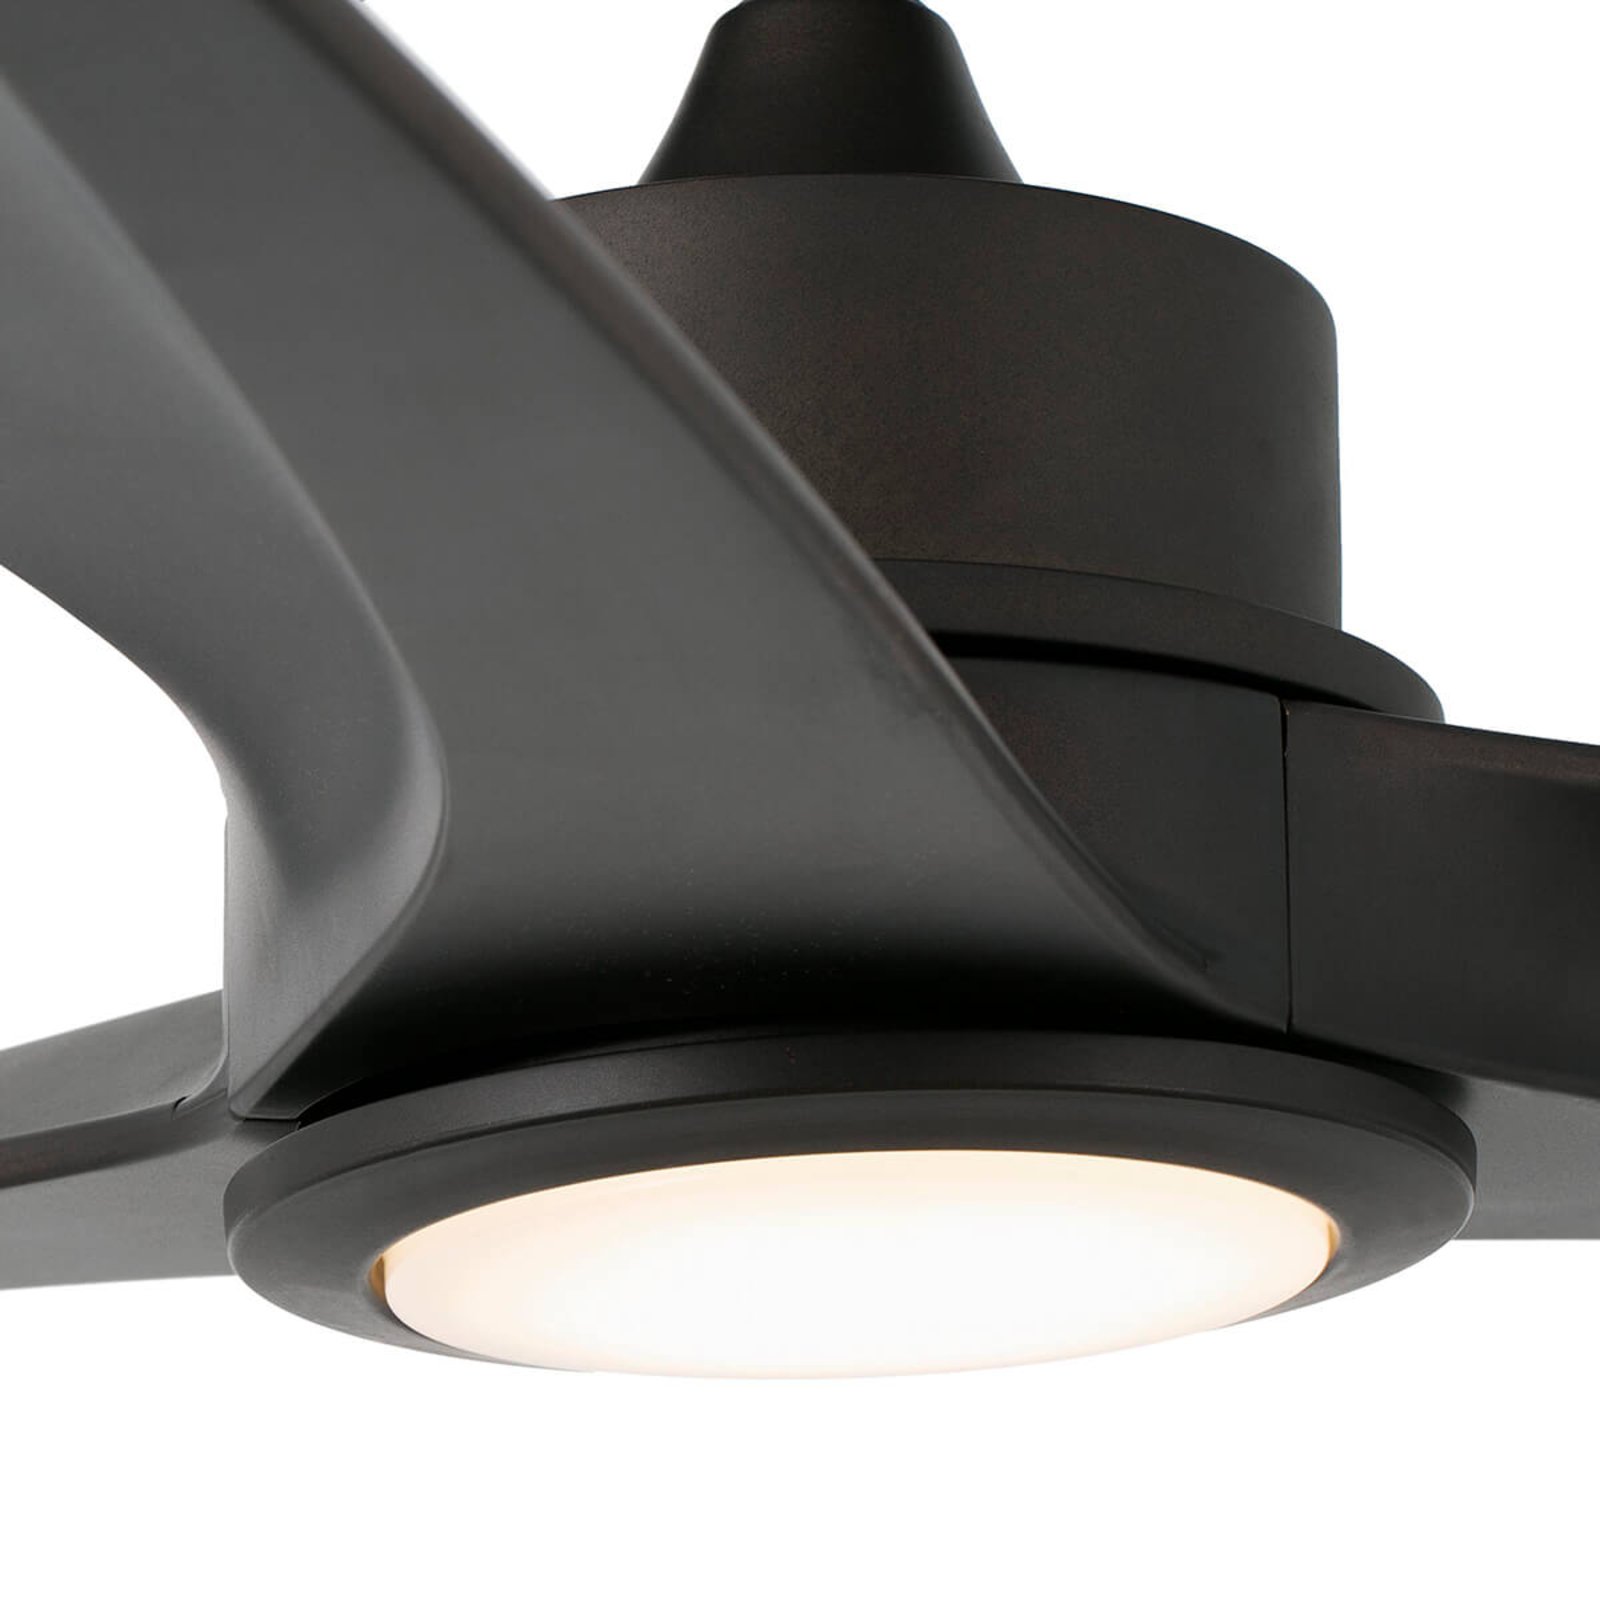 Tonic LED ceiling fan, dark brown